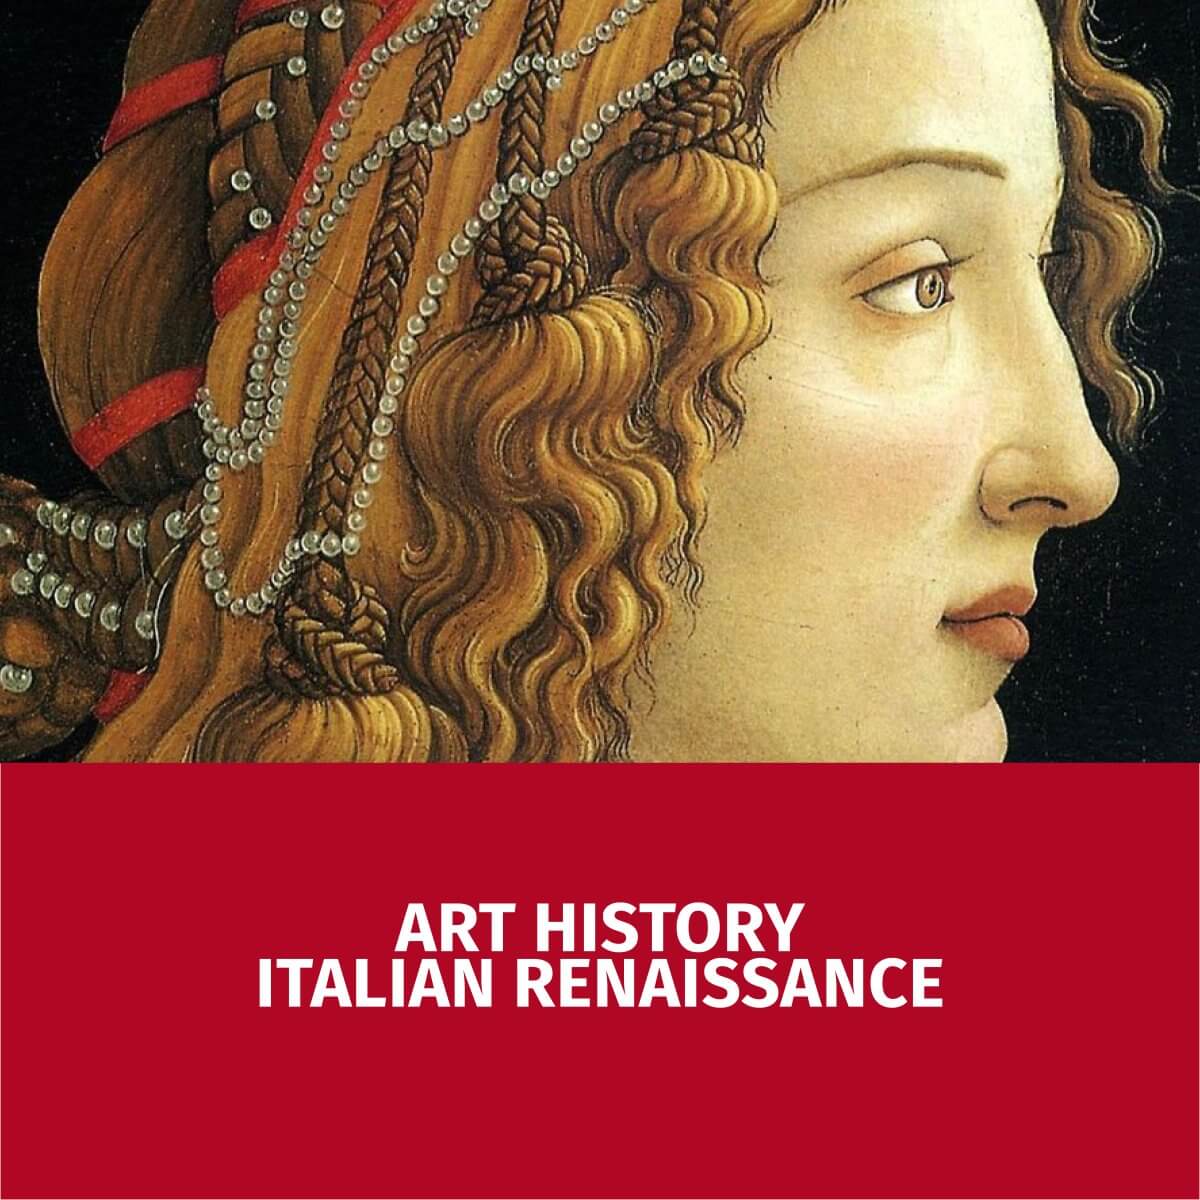 The Italian Renaissance - Volume II